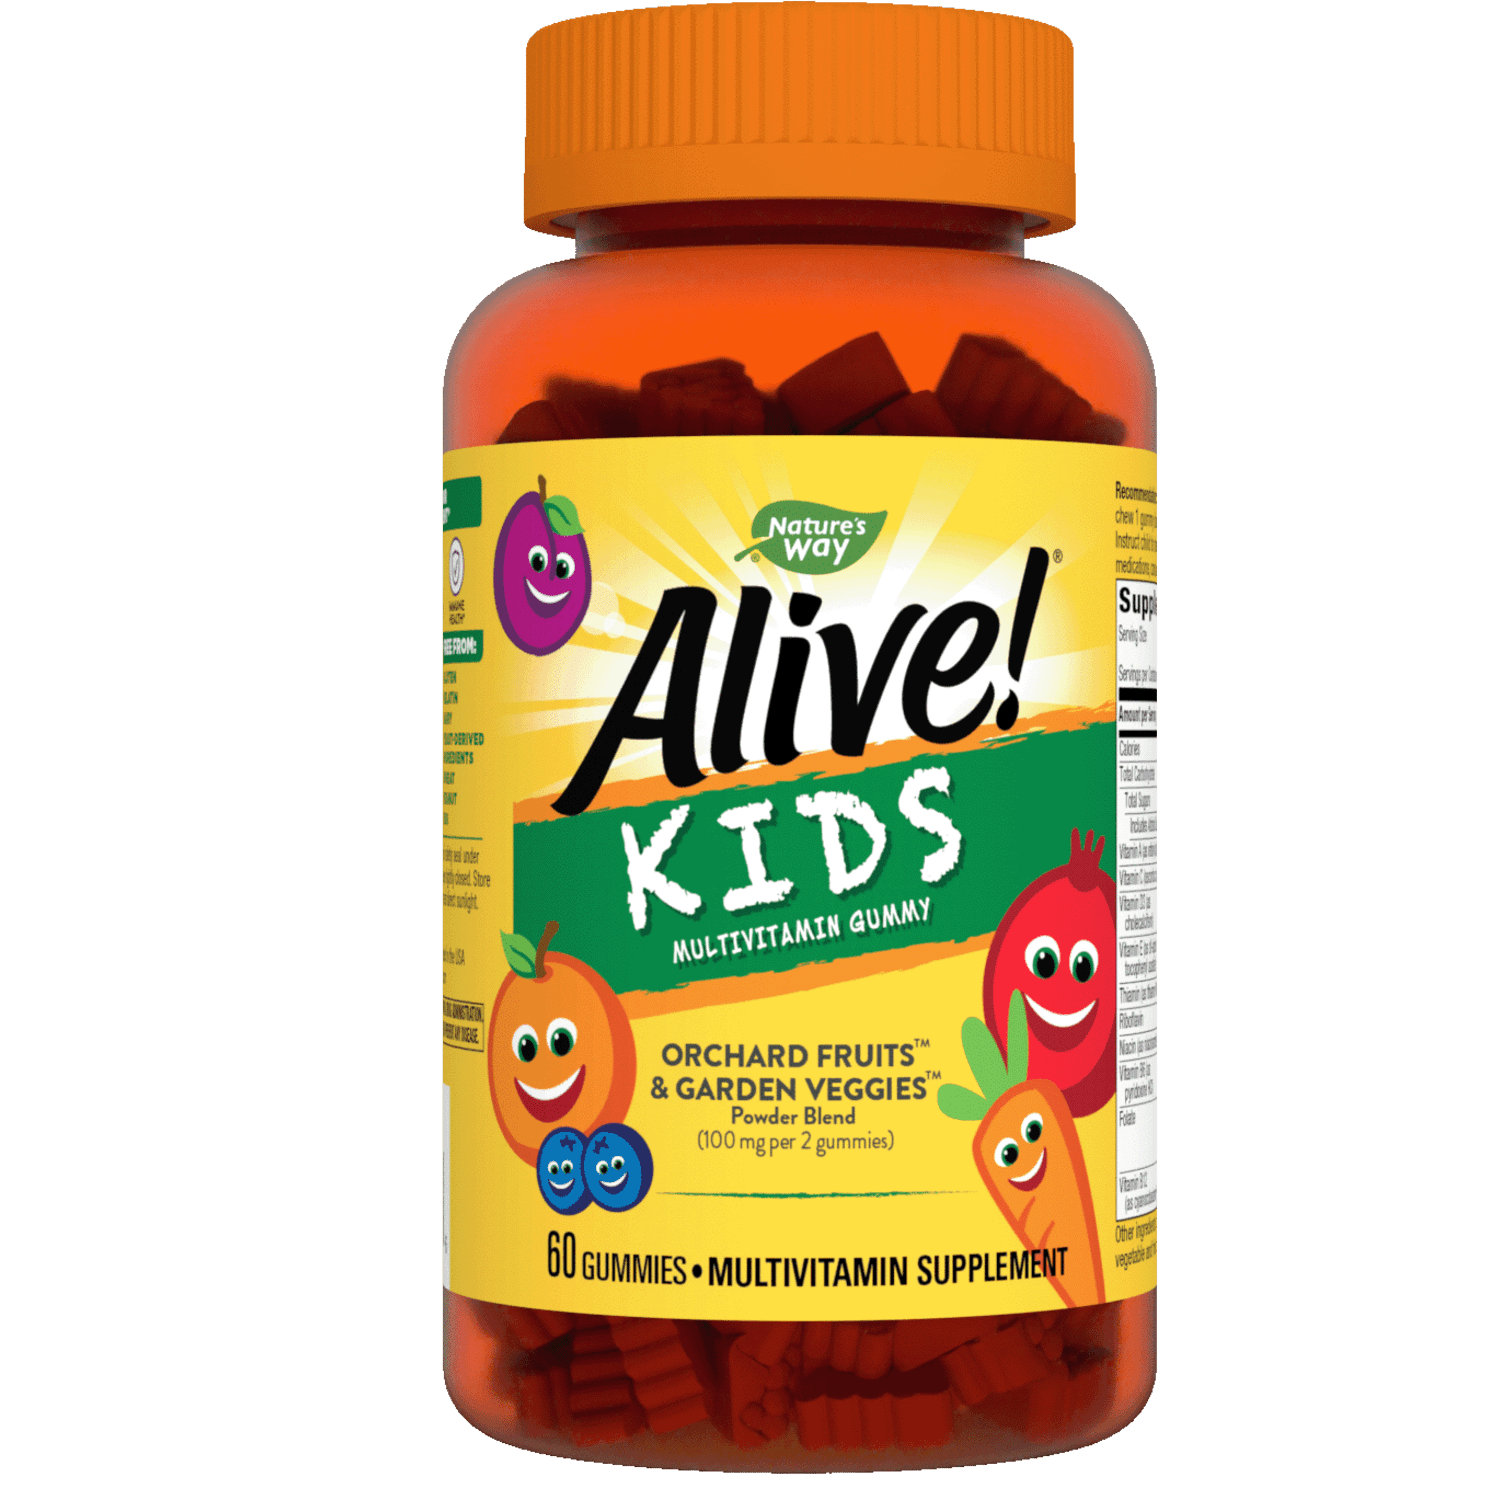 Мультивитамины Аливе. Аливе Gummies витамины для детей. Витамины детские Alive Kids. Natures way, Alive! Kids Multivitamin Gummy №90.